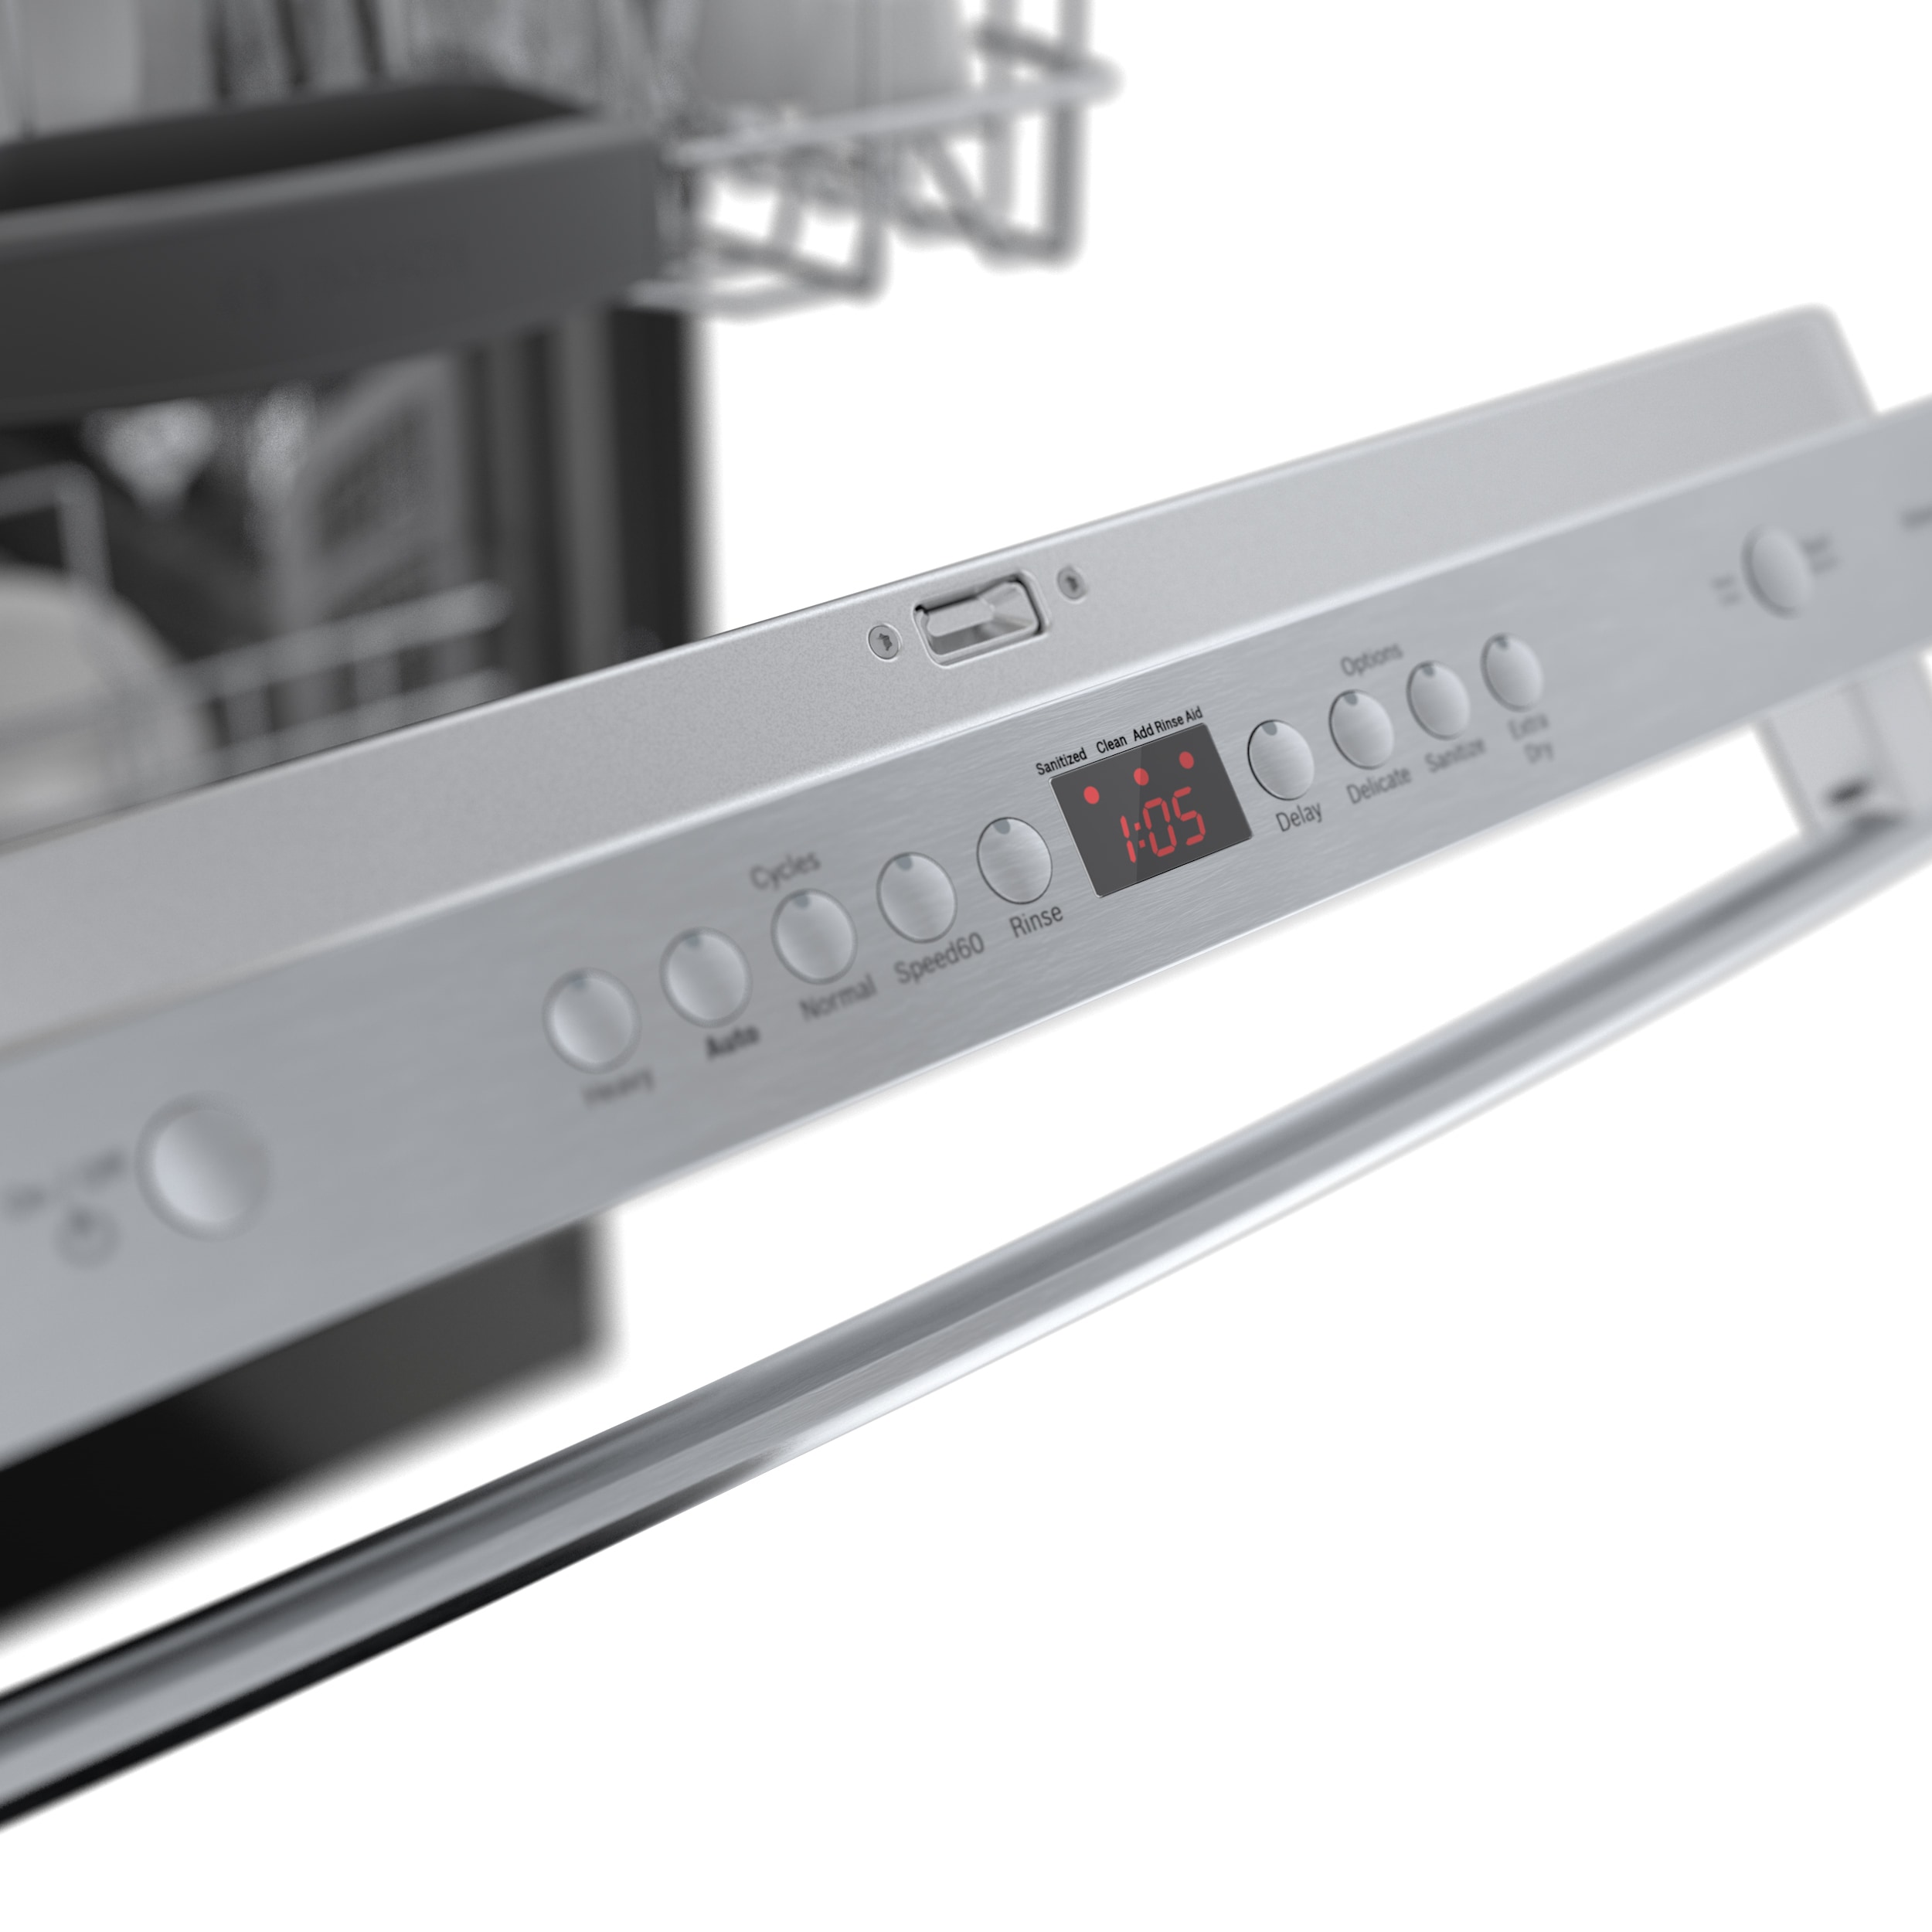 Bosch Lave-vaisselle intelligent encastrable Série 100 24 po, à